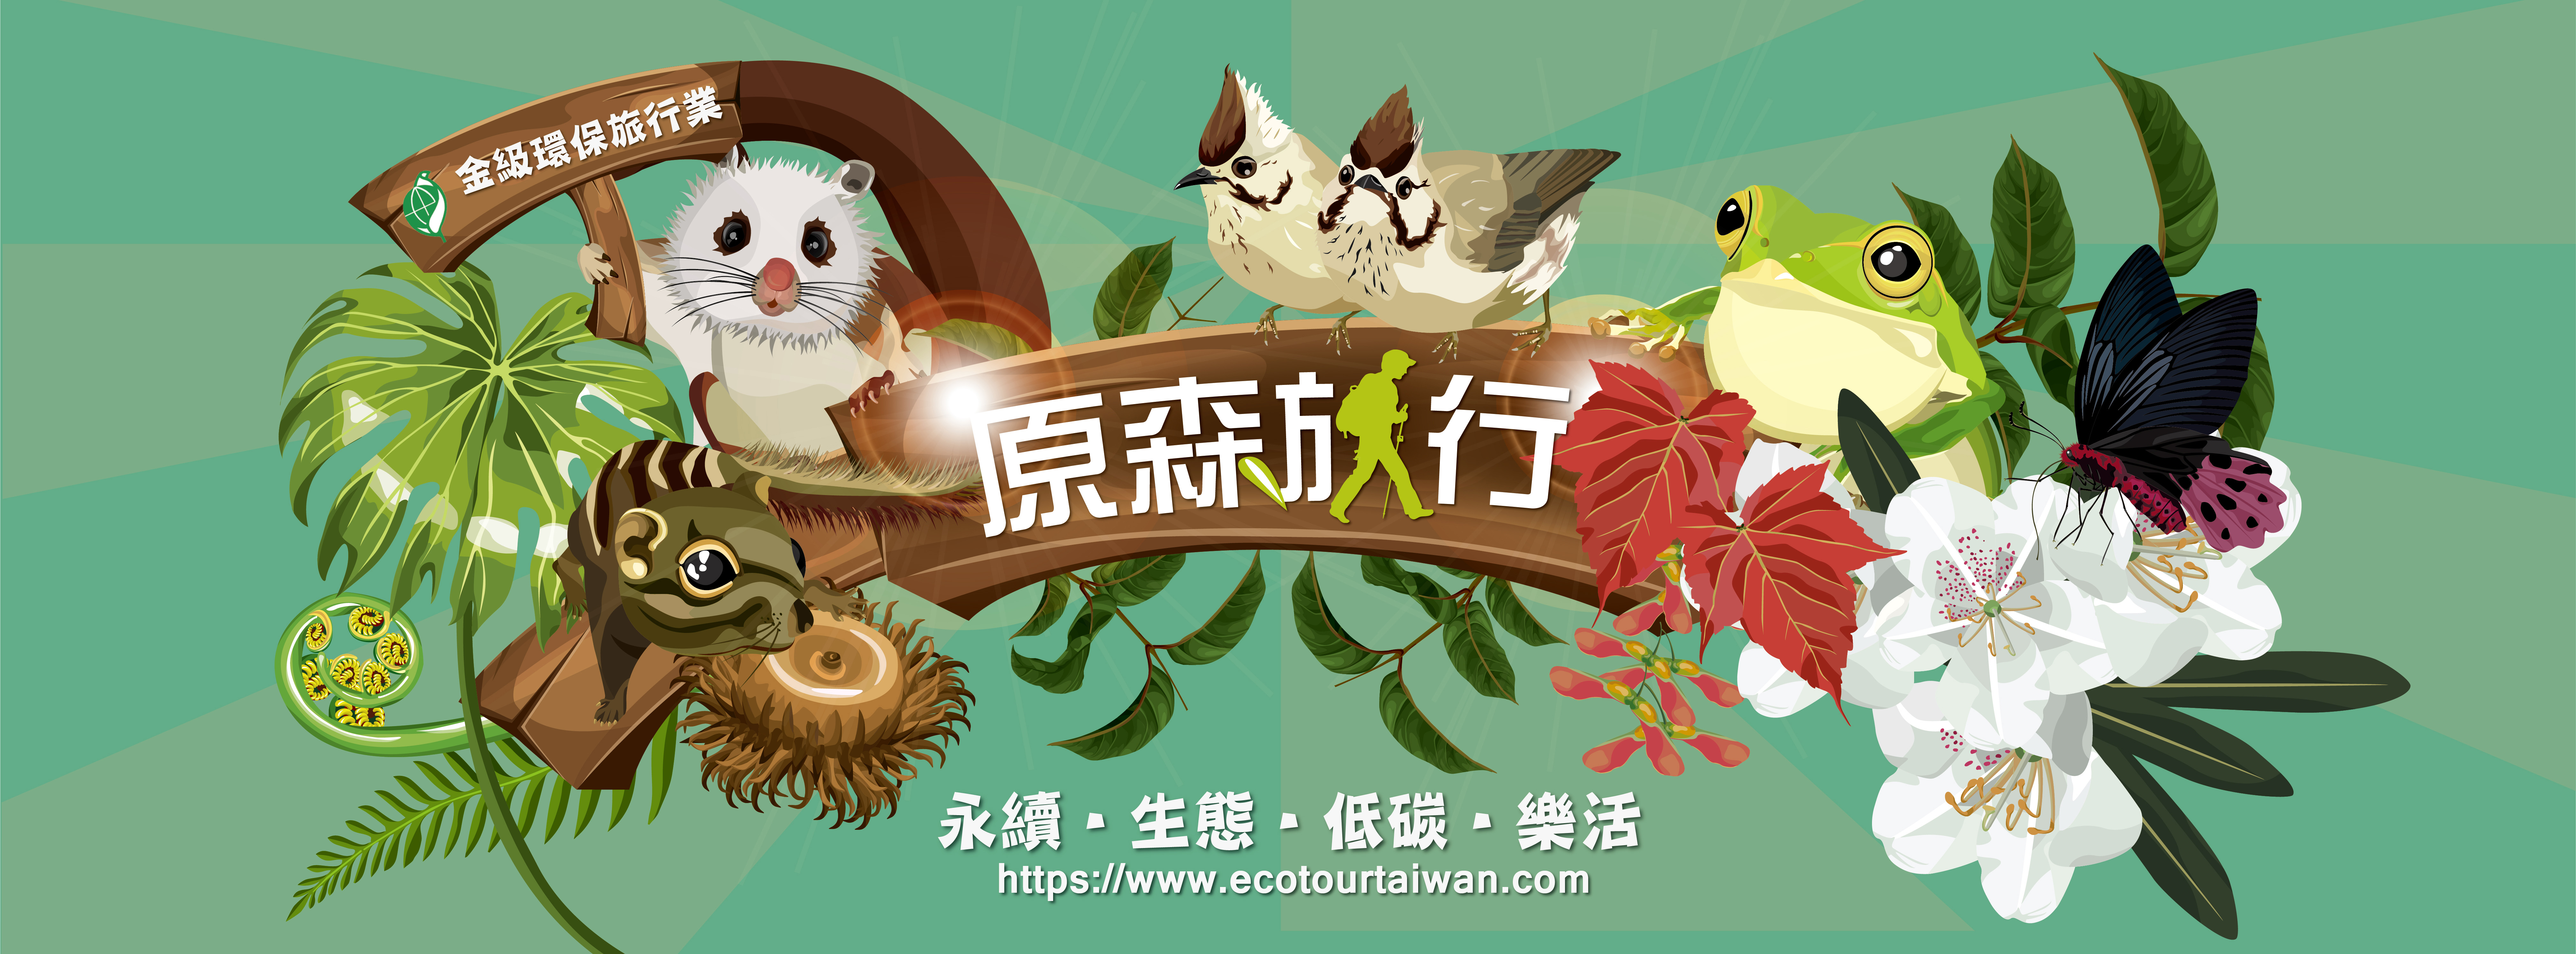 eco tour taiwan